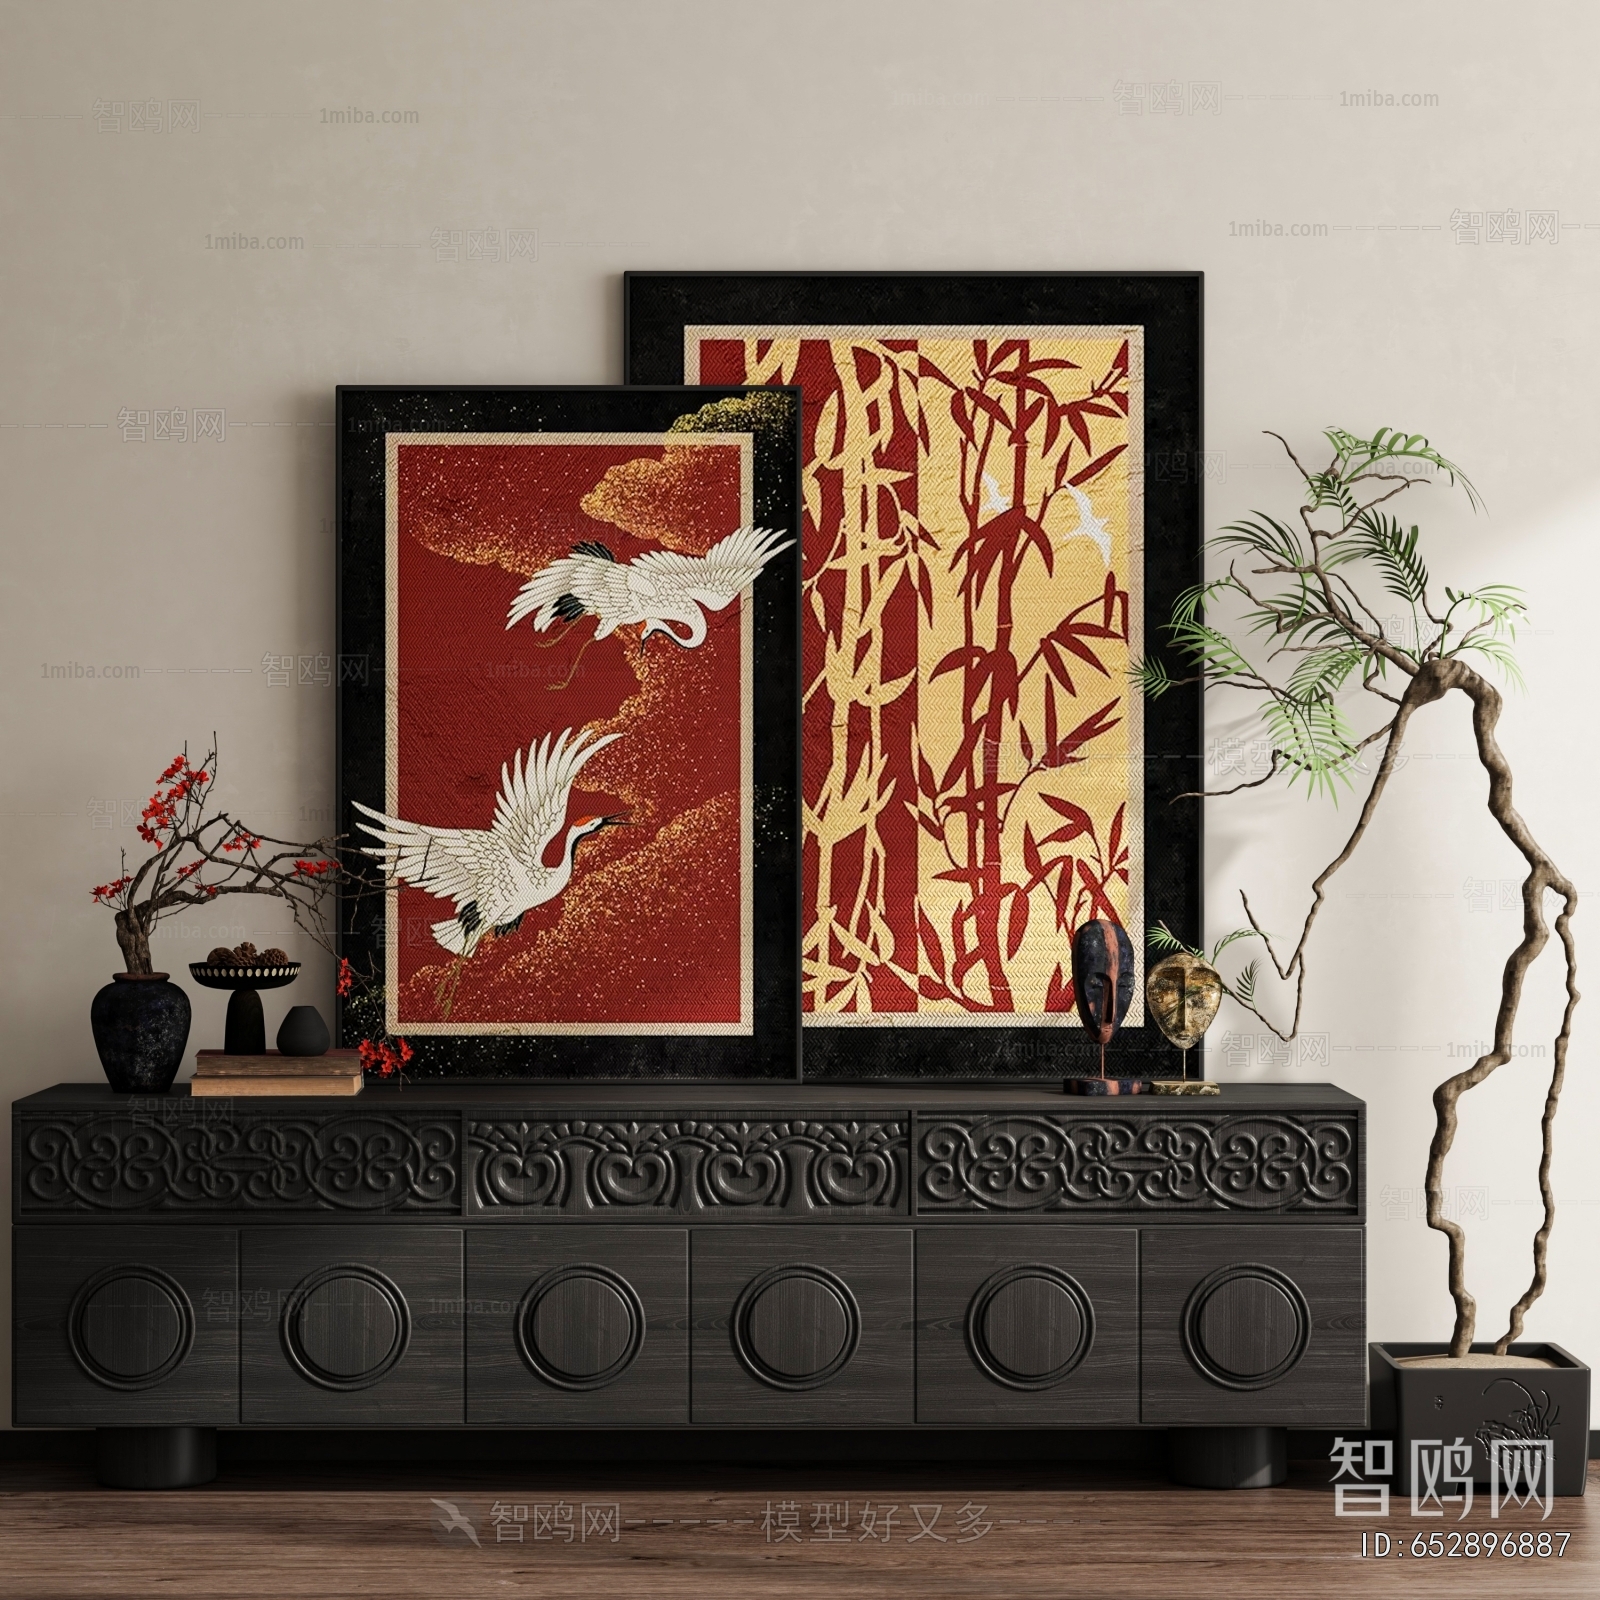 New Chinese Style Wabi-sabi Style Painting